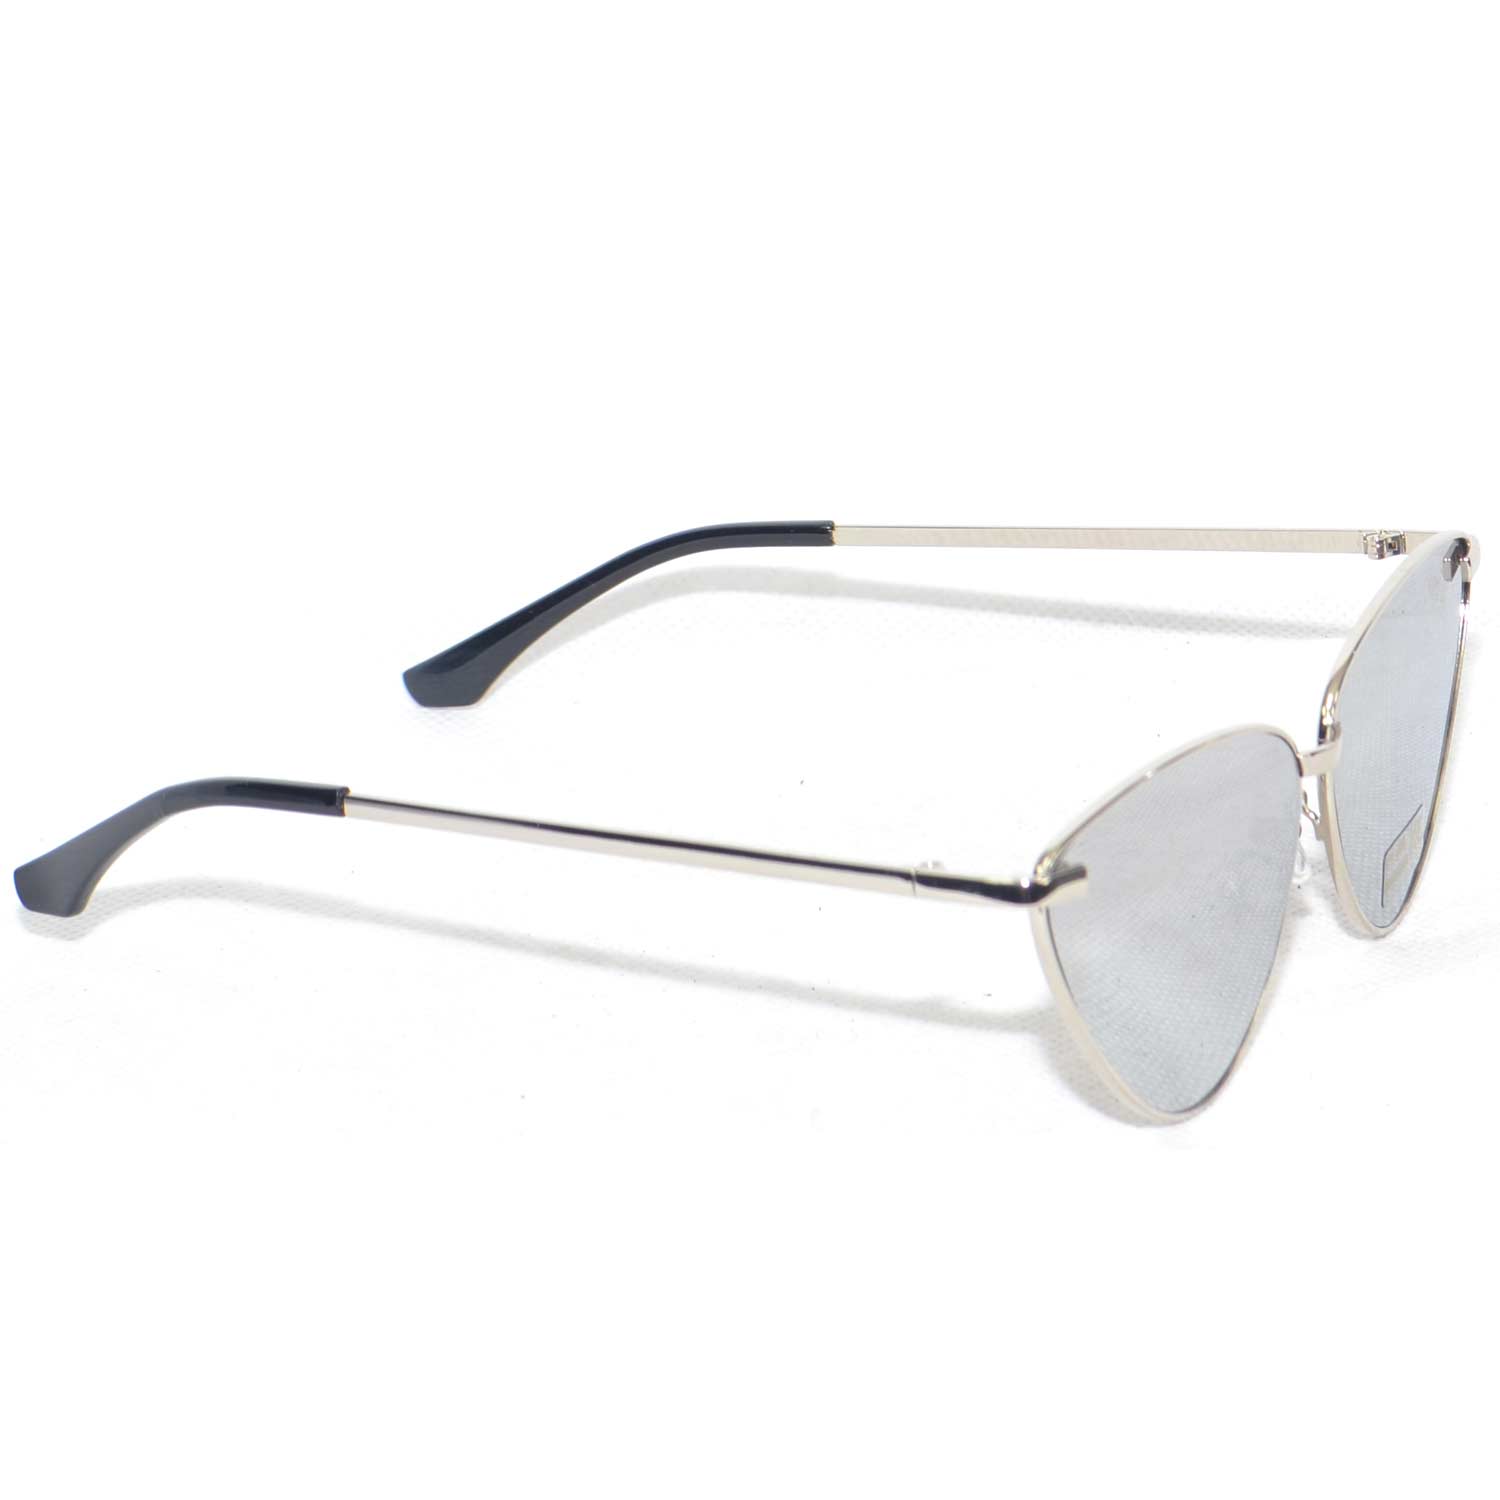 Sunglasses occhiali da sole donna grandi modello ferragni anni 30